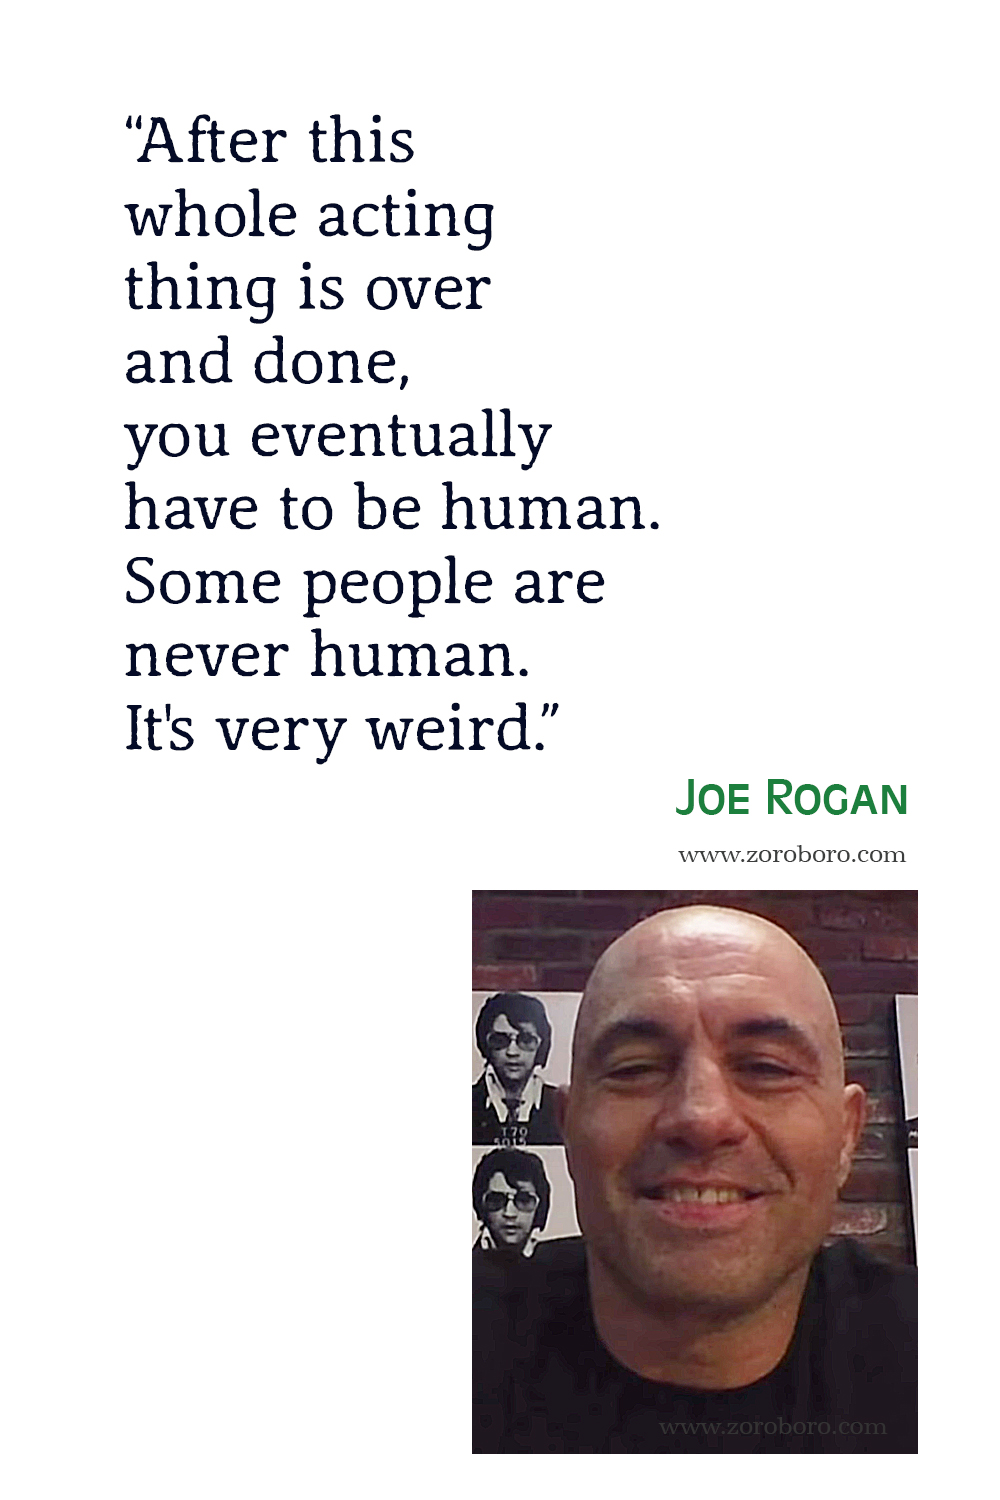 Joe Rogan Quotes, Joe Rogan Podcast Quotes, Joe Rogan Inspirational Quotes, Joe Rogan Motivational Quotes, Joe Rogan Jre